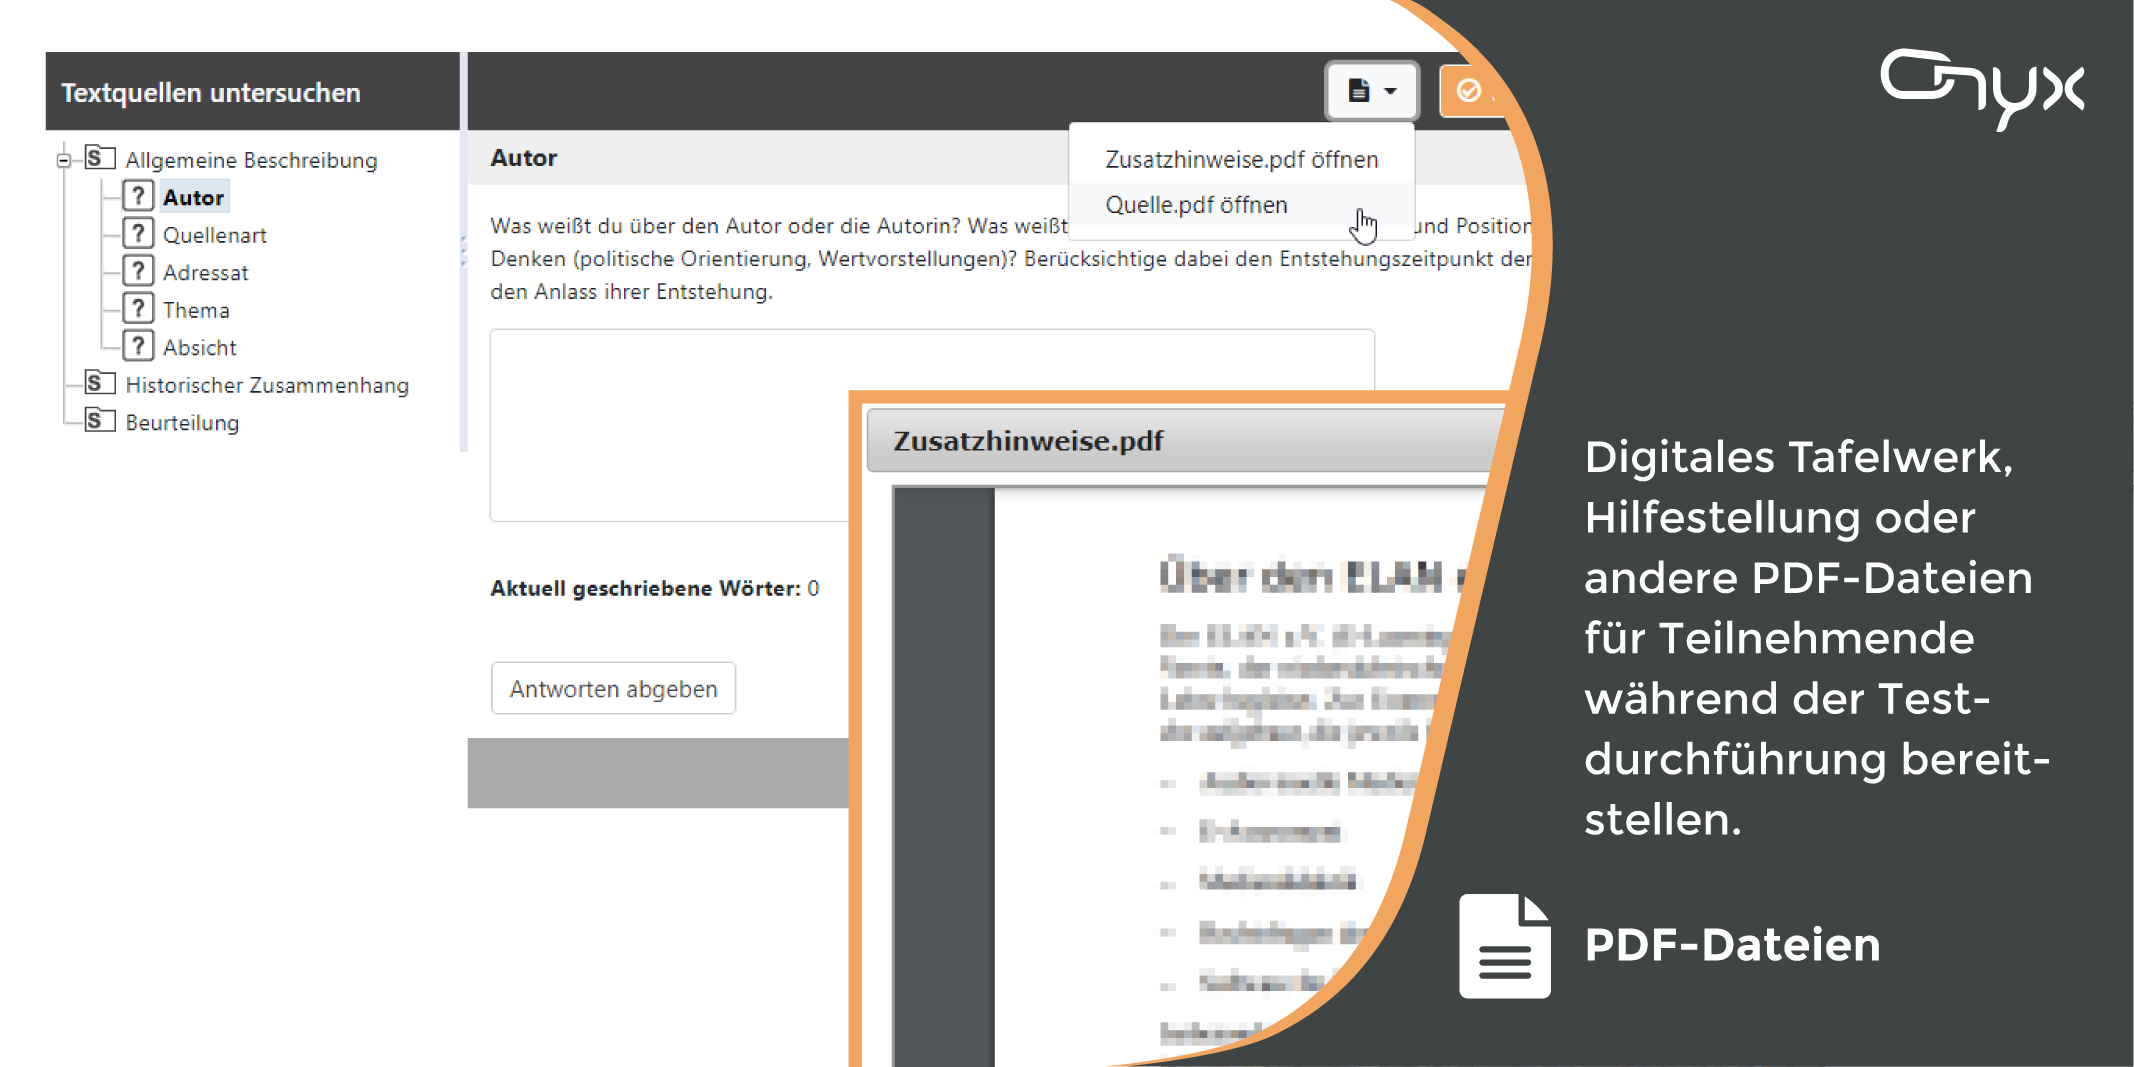 ONYX Testsuite - PDF-Dateien für Teilnehmende während der Testdurchführung bereitstellen - Screenshot